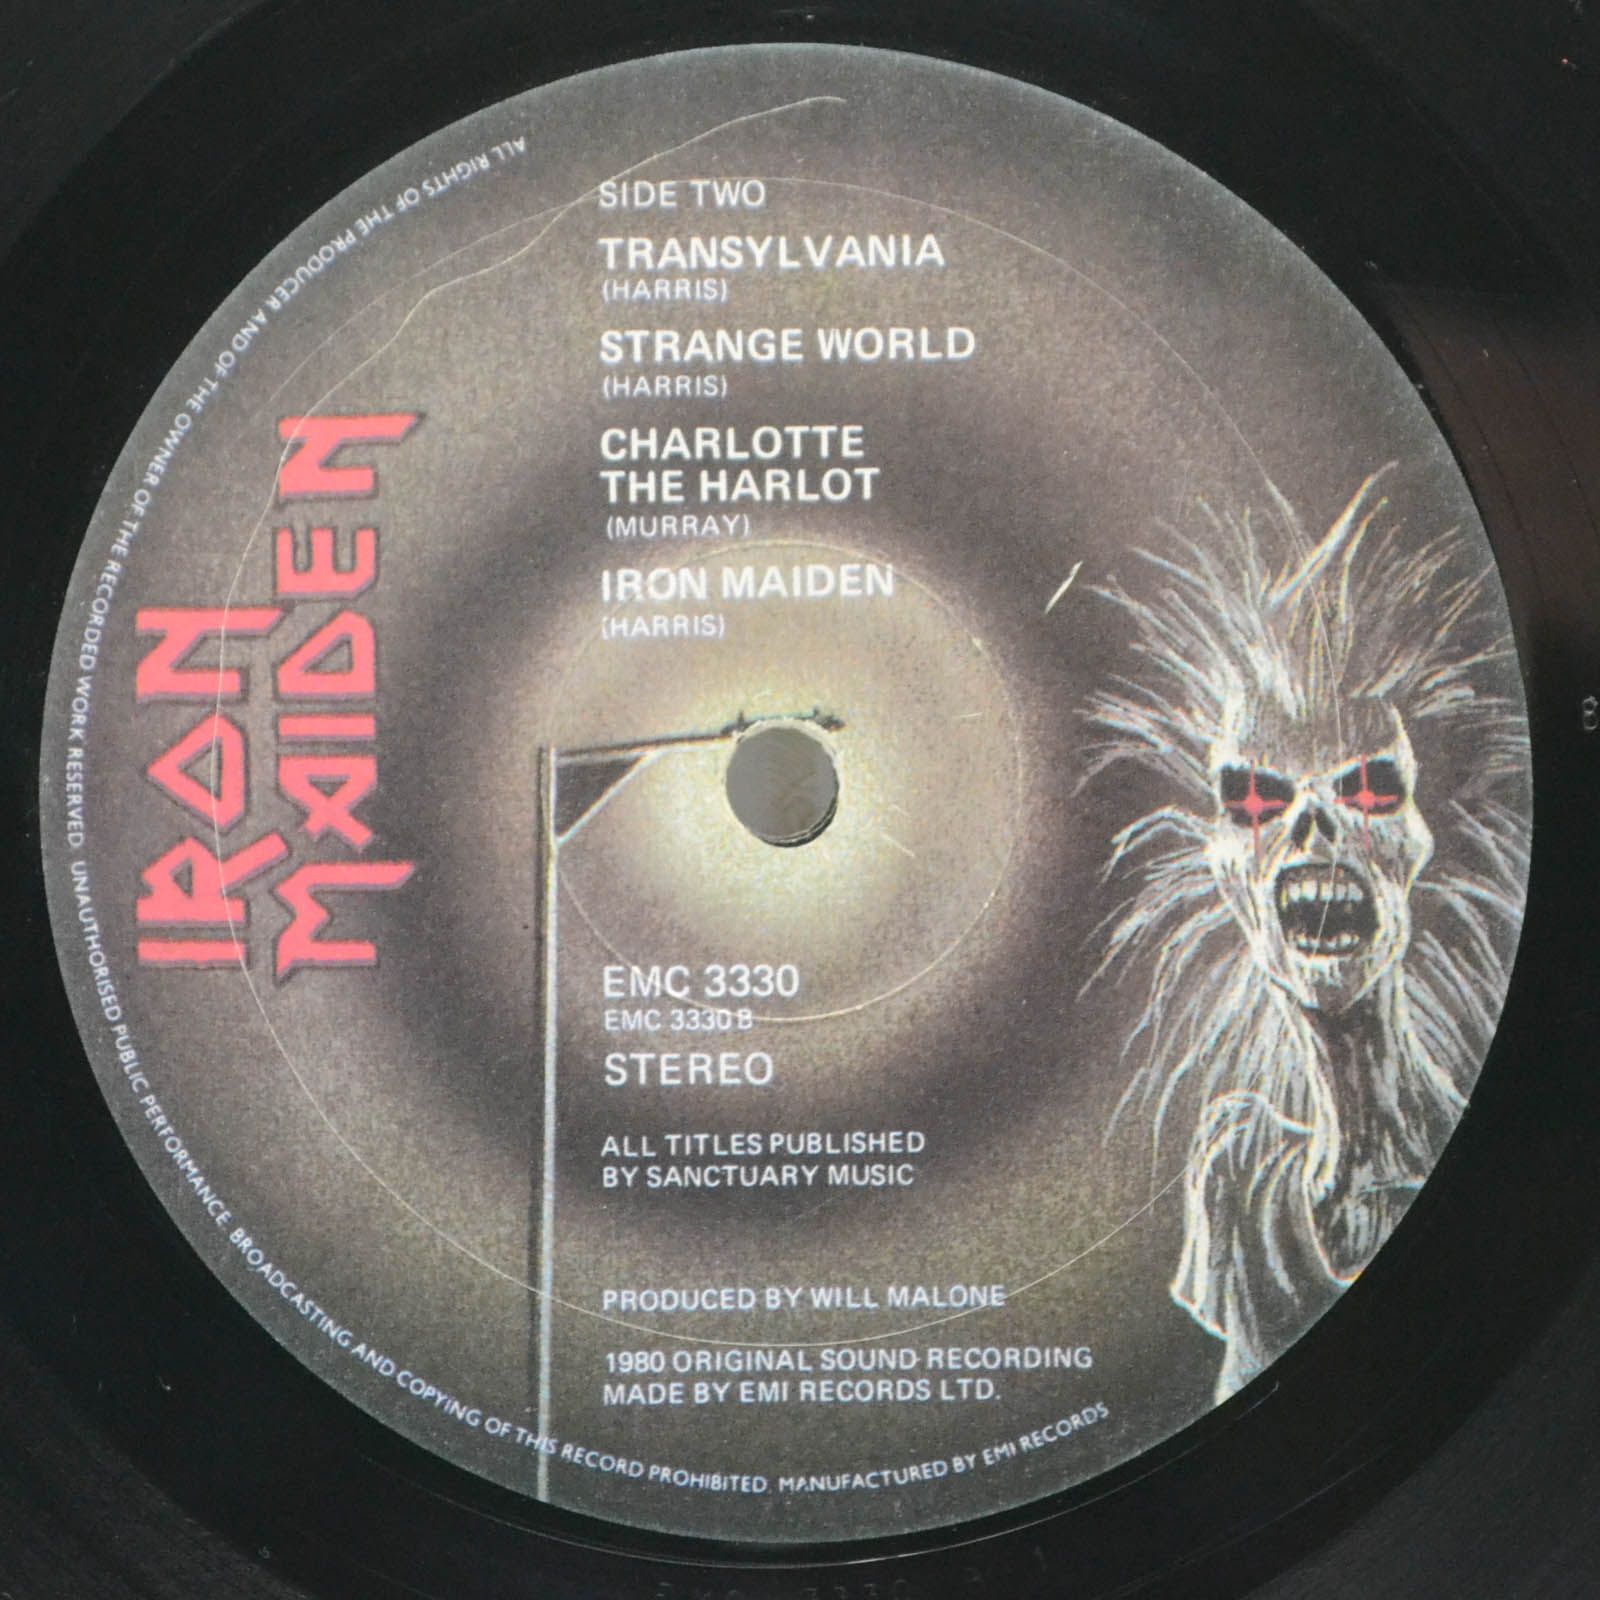 Iron Maiden — Iron Maiden (1-st, UK), 1980